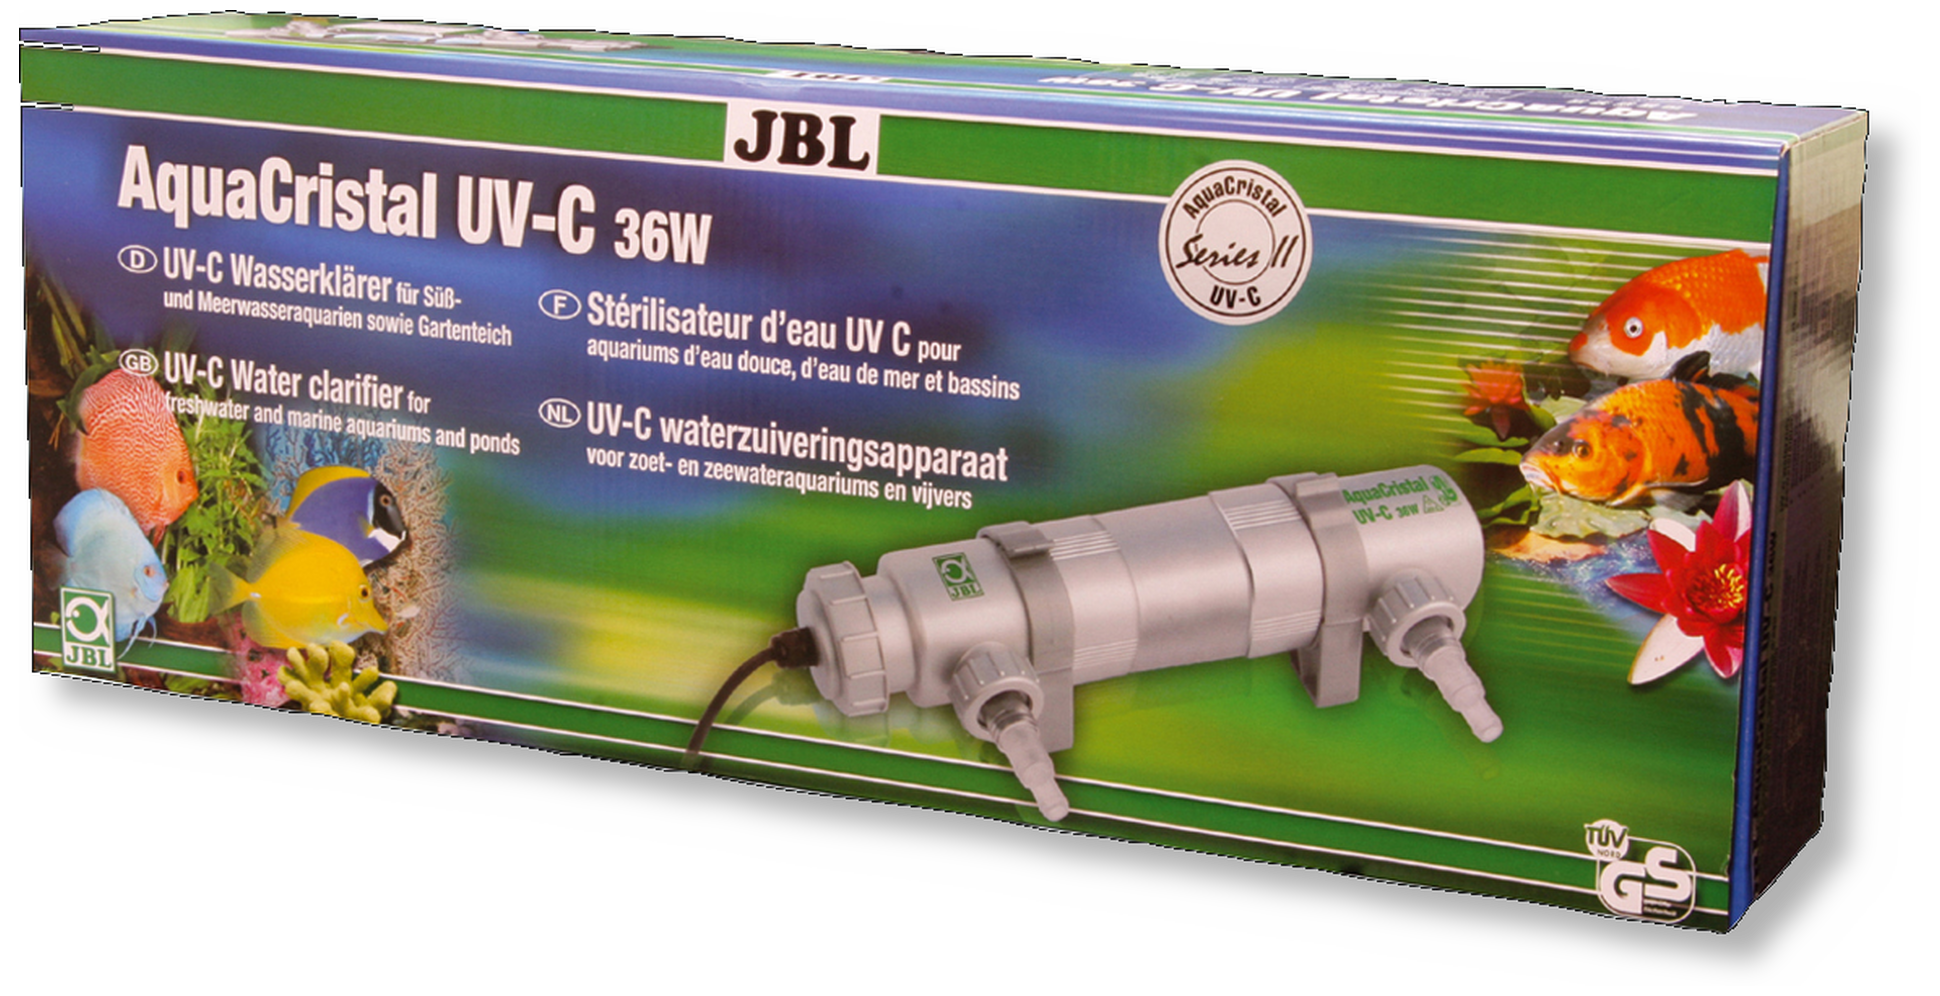 JBL AquaCristal UV-C 36 W